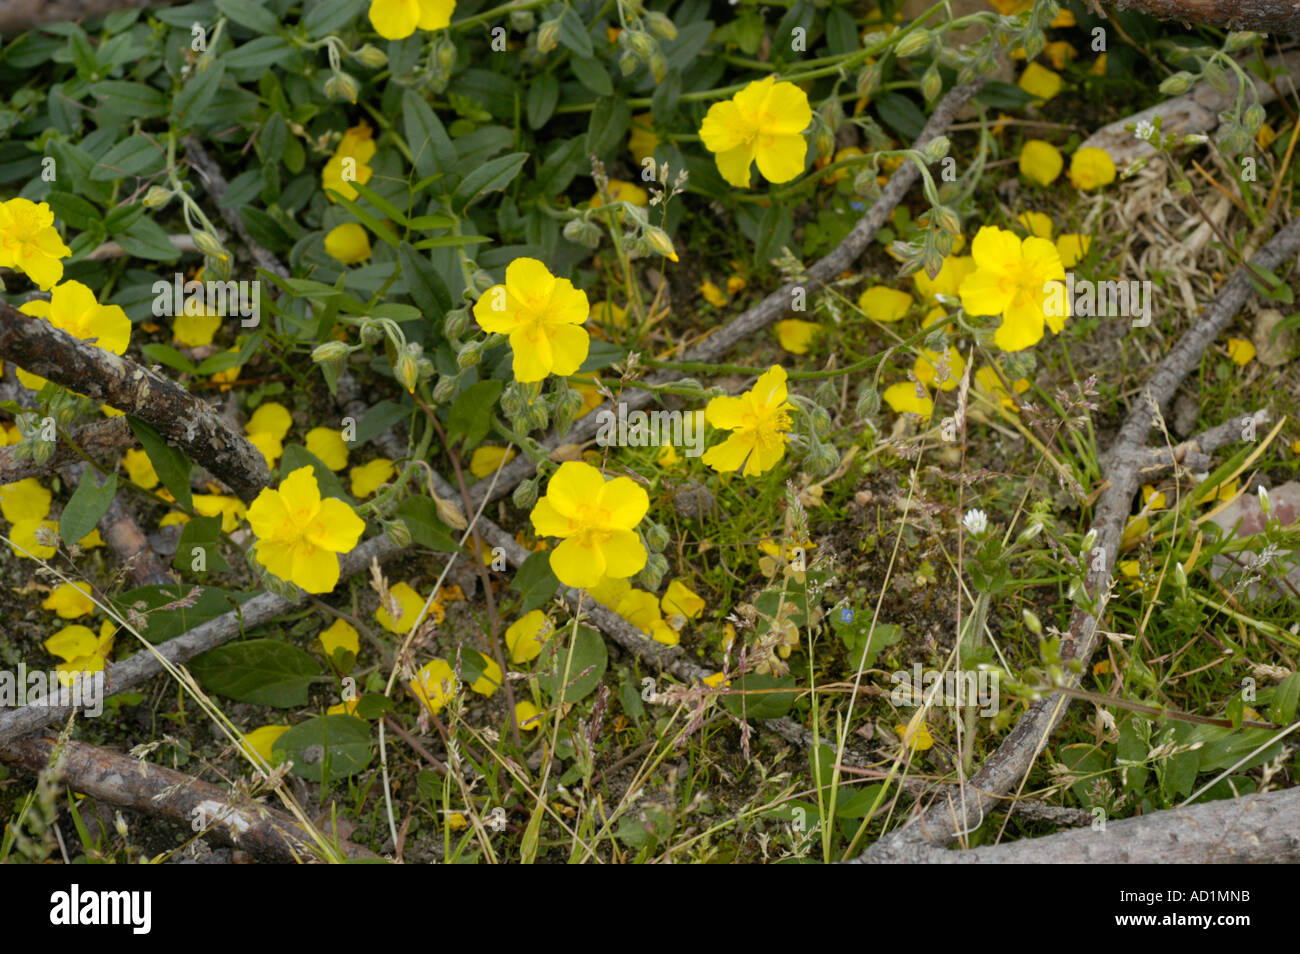 Common Rock Rose Cistaceae Helianthemum nummularium grandiflorum Stock Photo